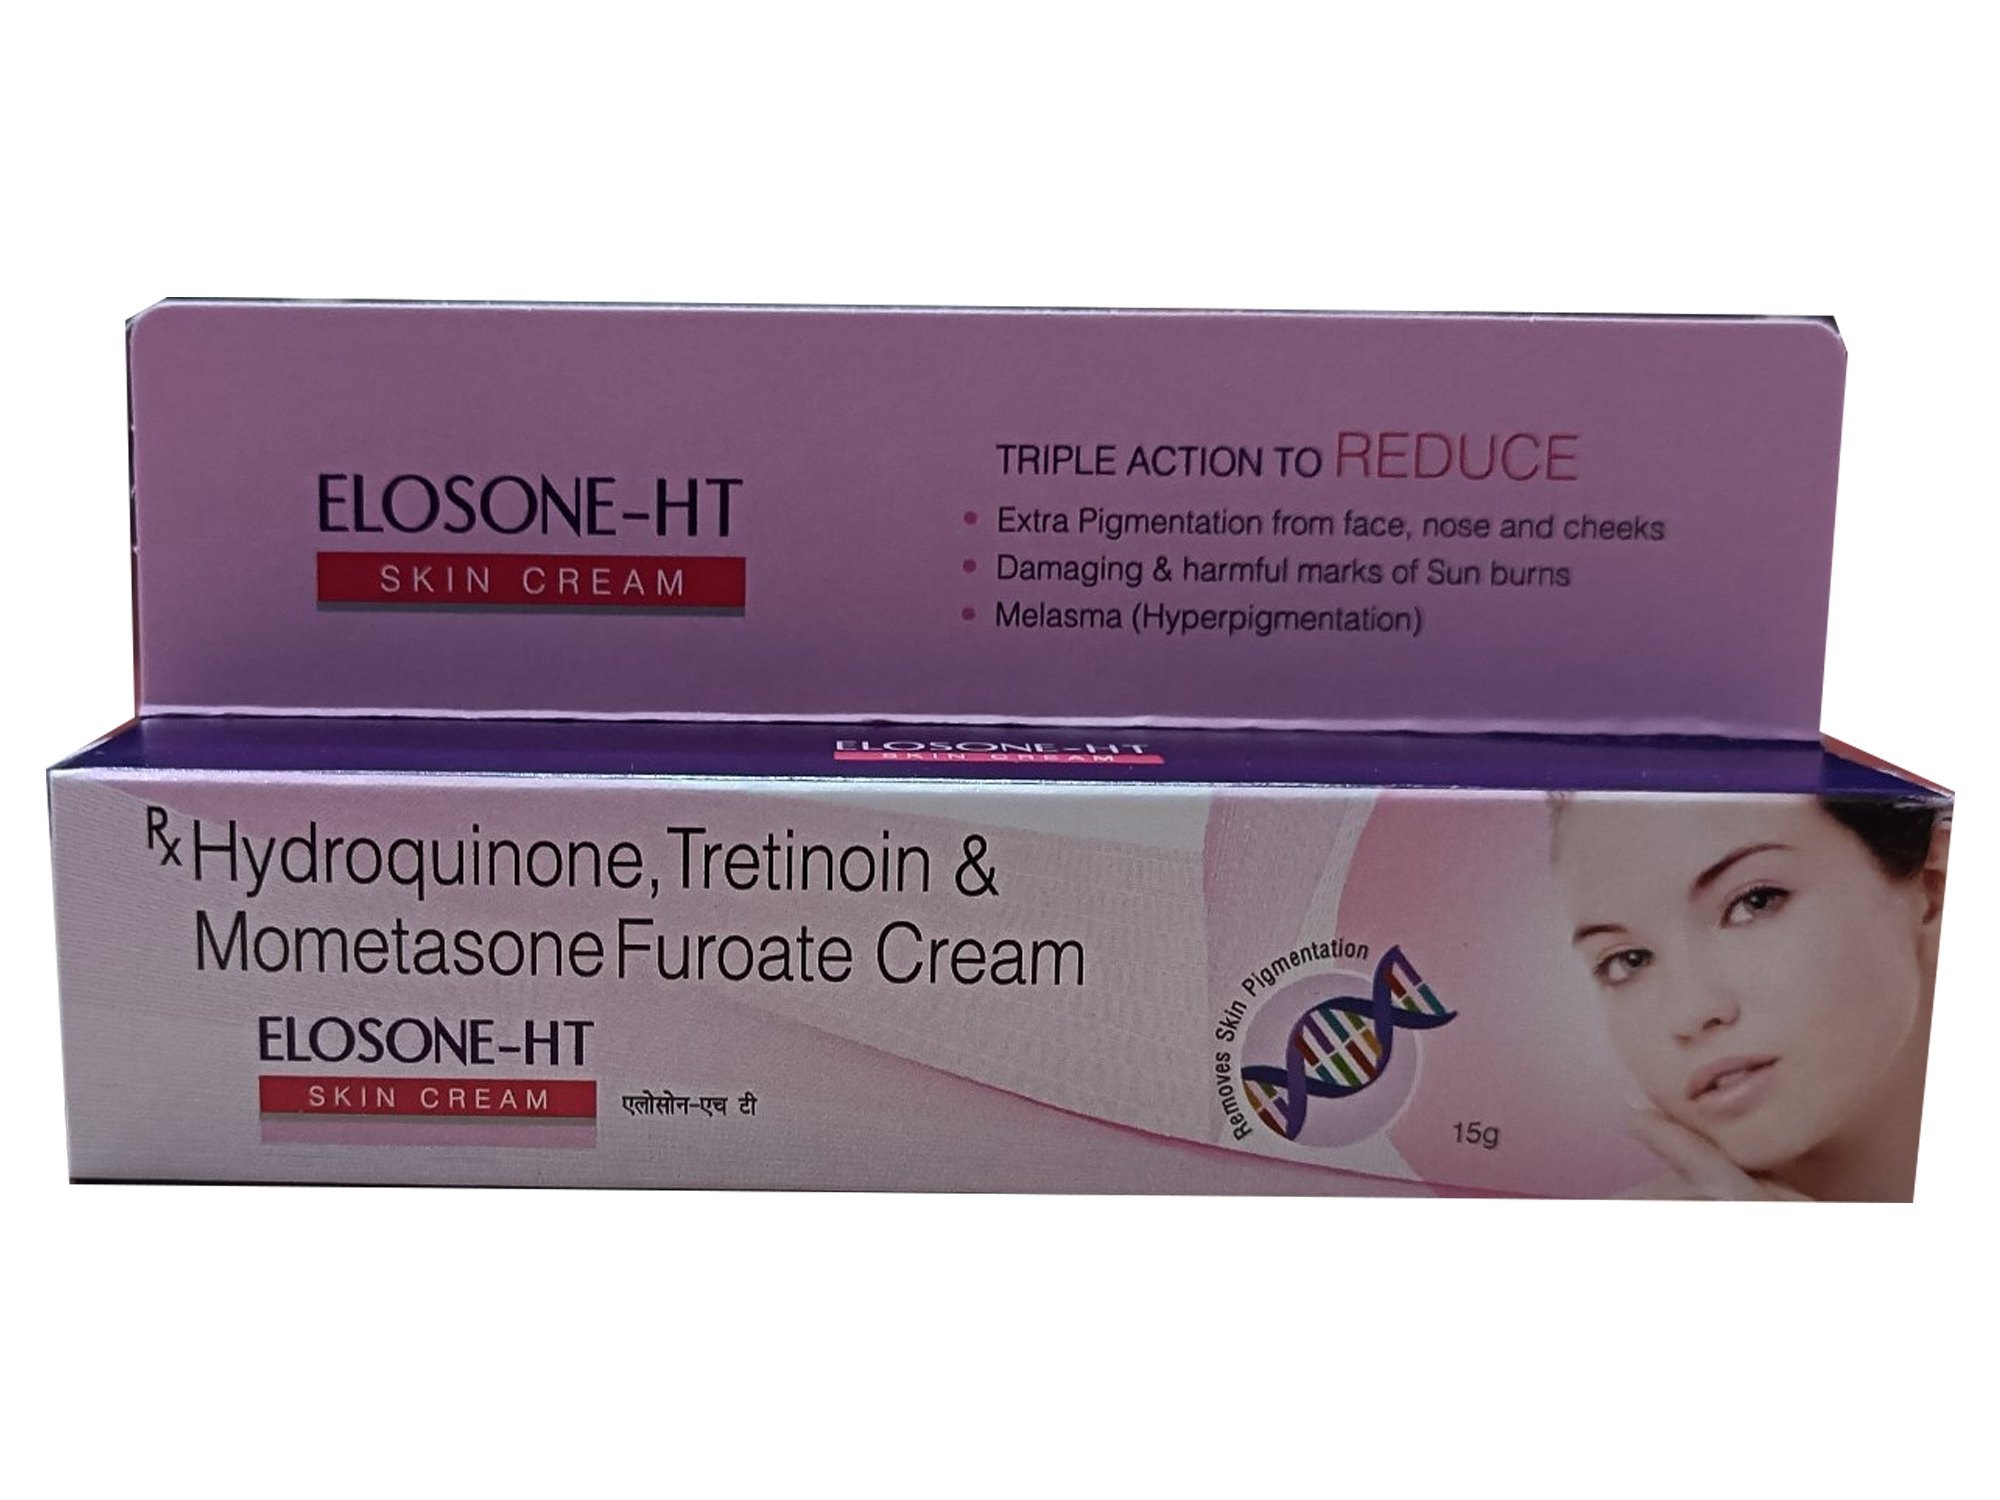 Hydroquinone Tretinoin And Mometasone Furoate Cream